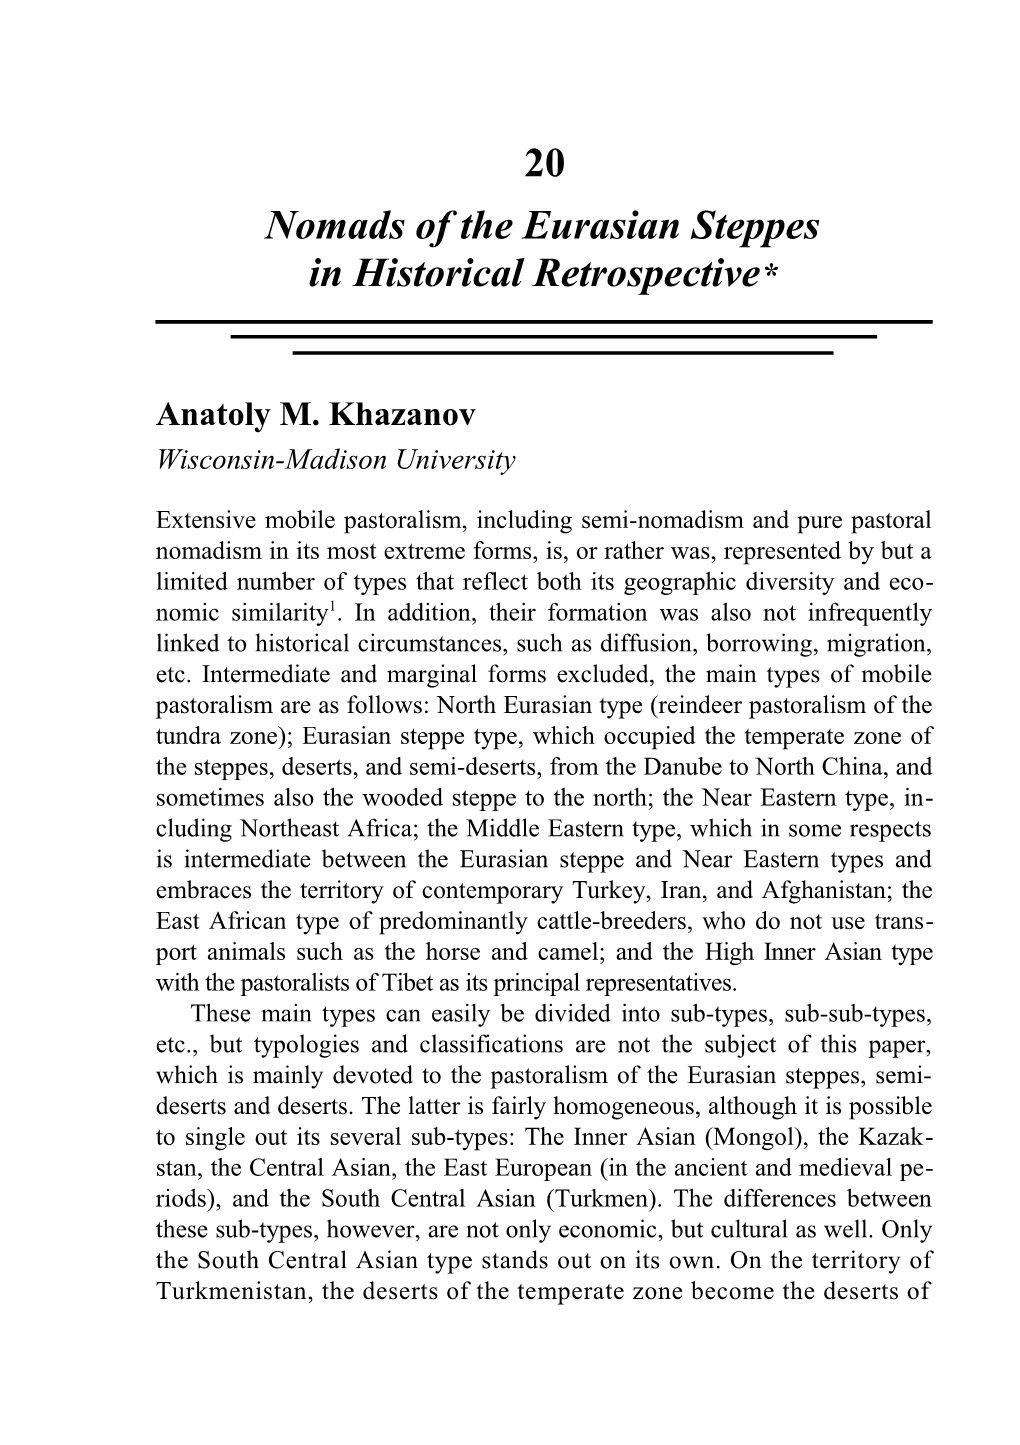 Khazanov / Nomads of the Eurasian Steppes 477